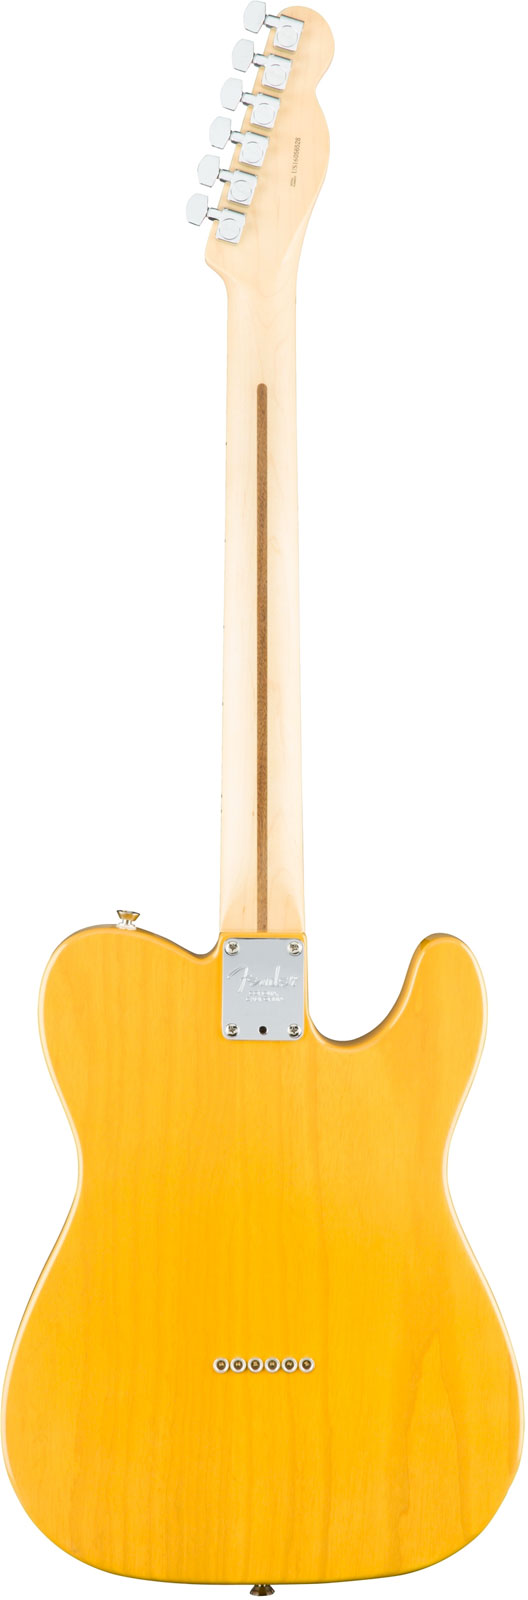 Fender Tele American Professional Lh Usa Gaucher 2s Mn - Butterscotch Blonde - Linkshandige elektrische gitaar - Variation 2